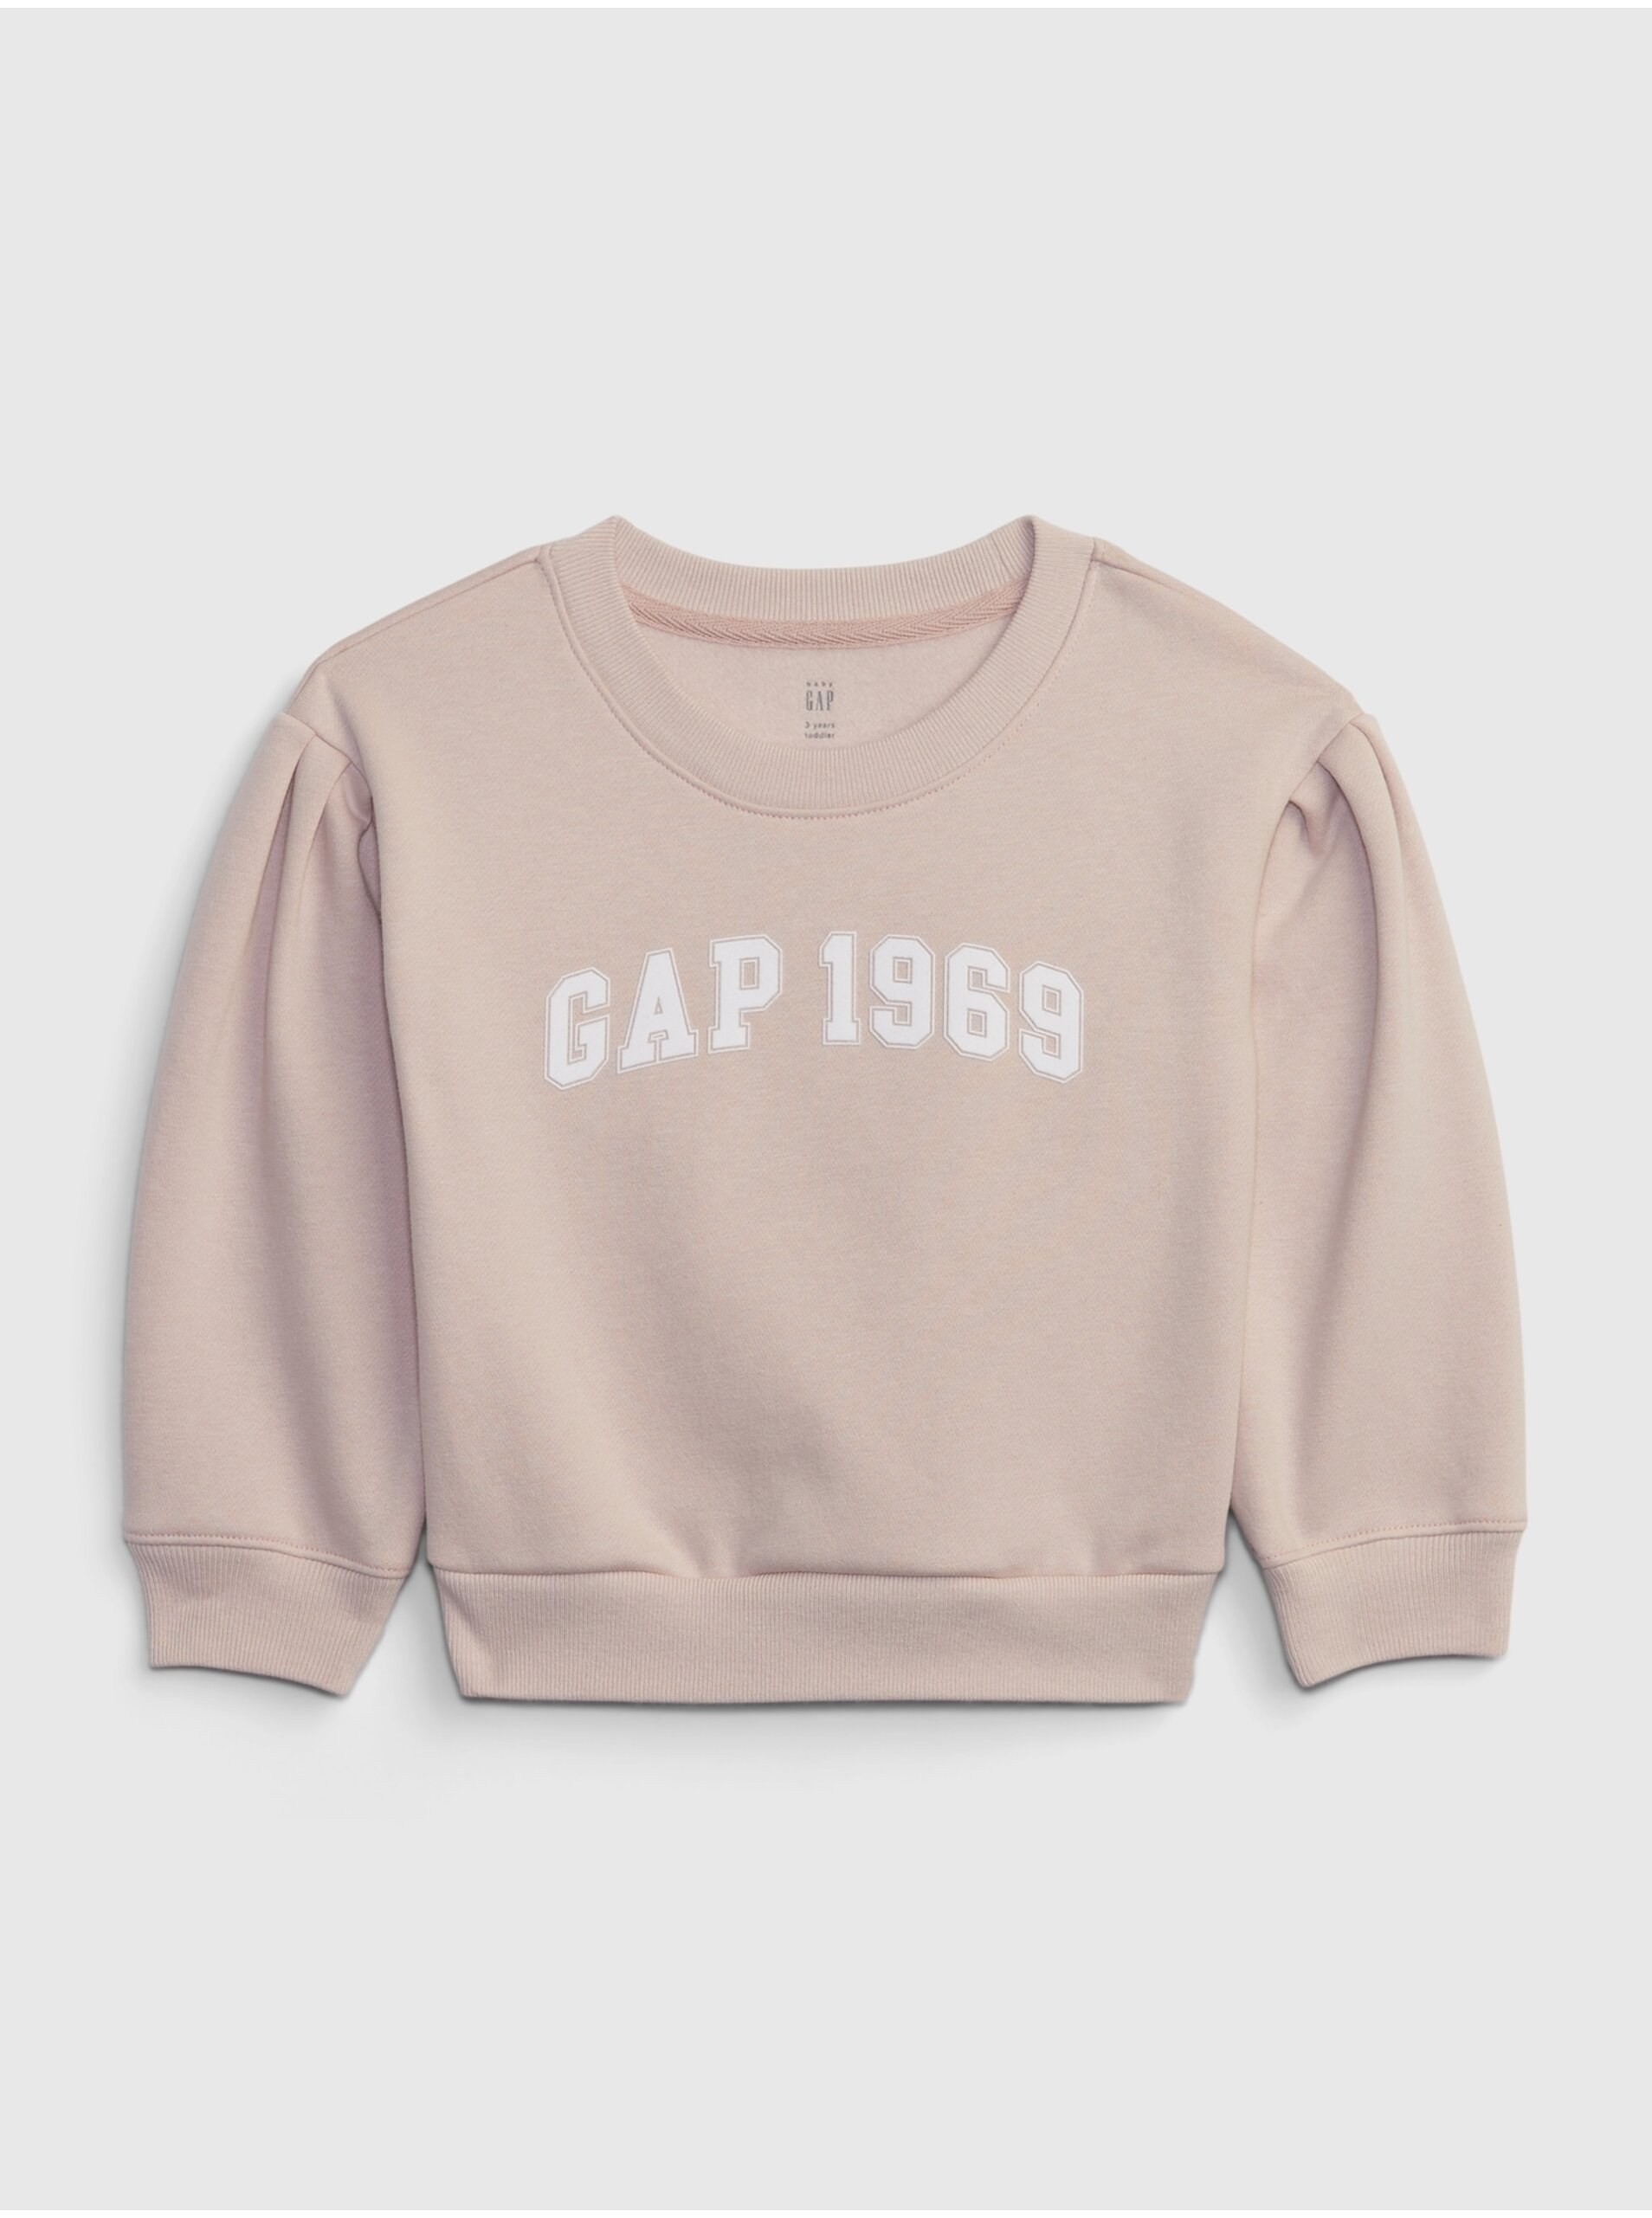 E-shop Světle růžová holčičí mikina GAP 1969